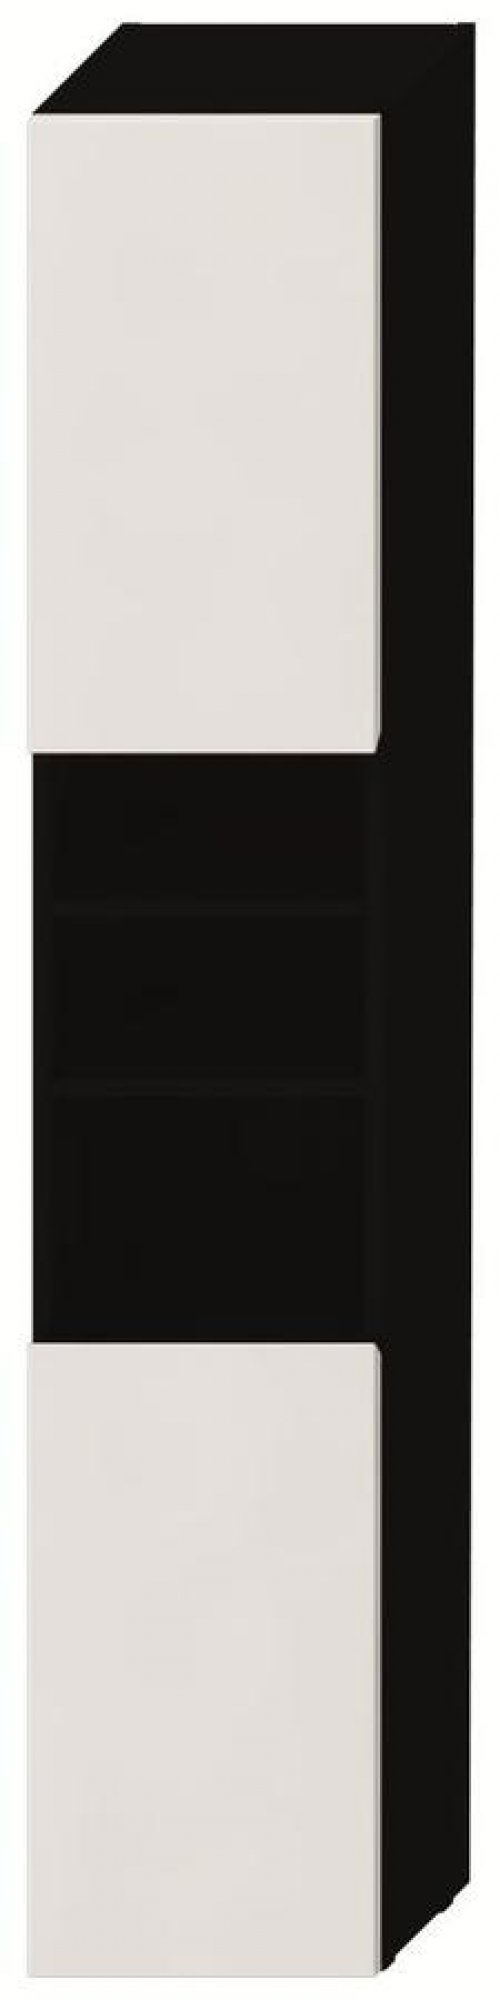 Vysoká skříňka 170 x 32 cm Jika LYRA pravé dveře, tmavý dub/bílý lak preview